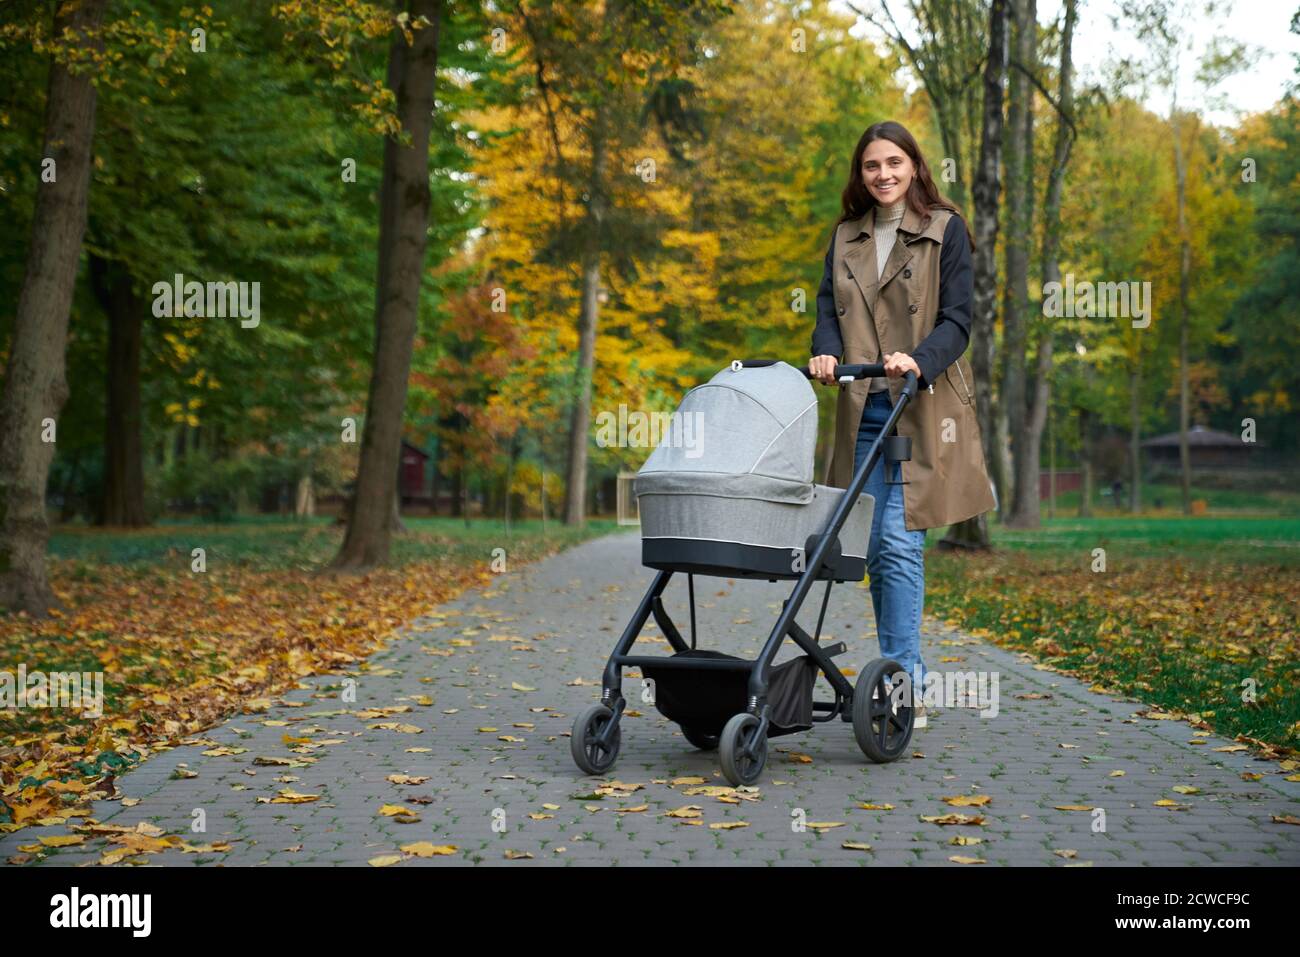 Vue latérale d'une femme dans un long manteau debout avec une poussette dans le parc d'automne. Mère avec bébé souriant à l'appareil photo. Concept de poussette pour bébé. Banque D'Images